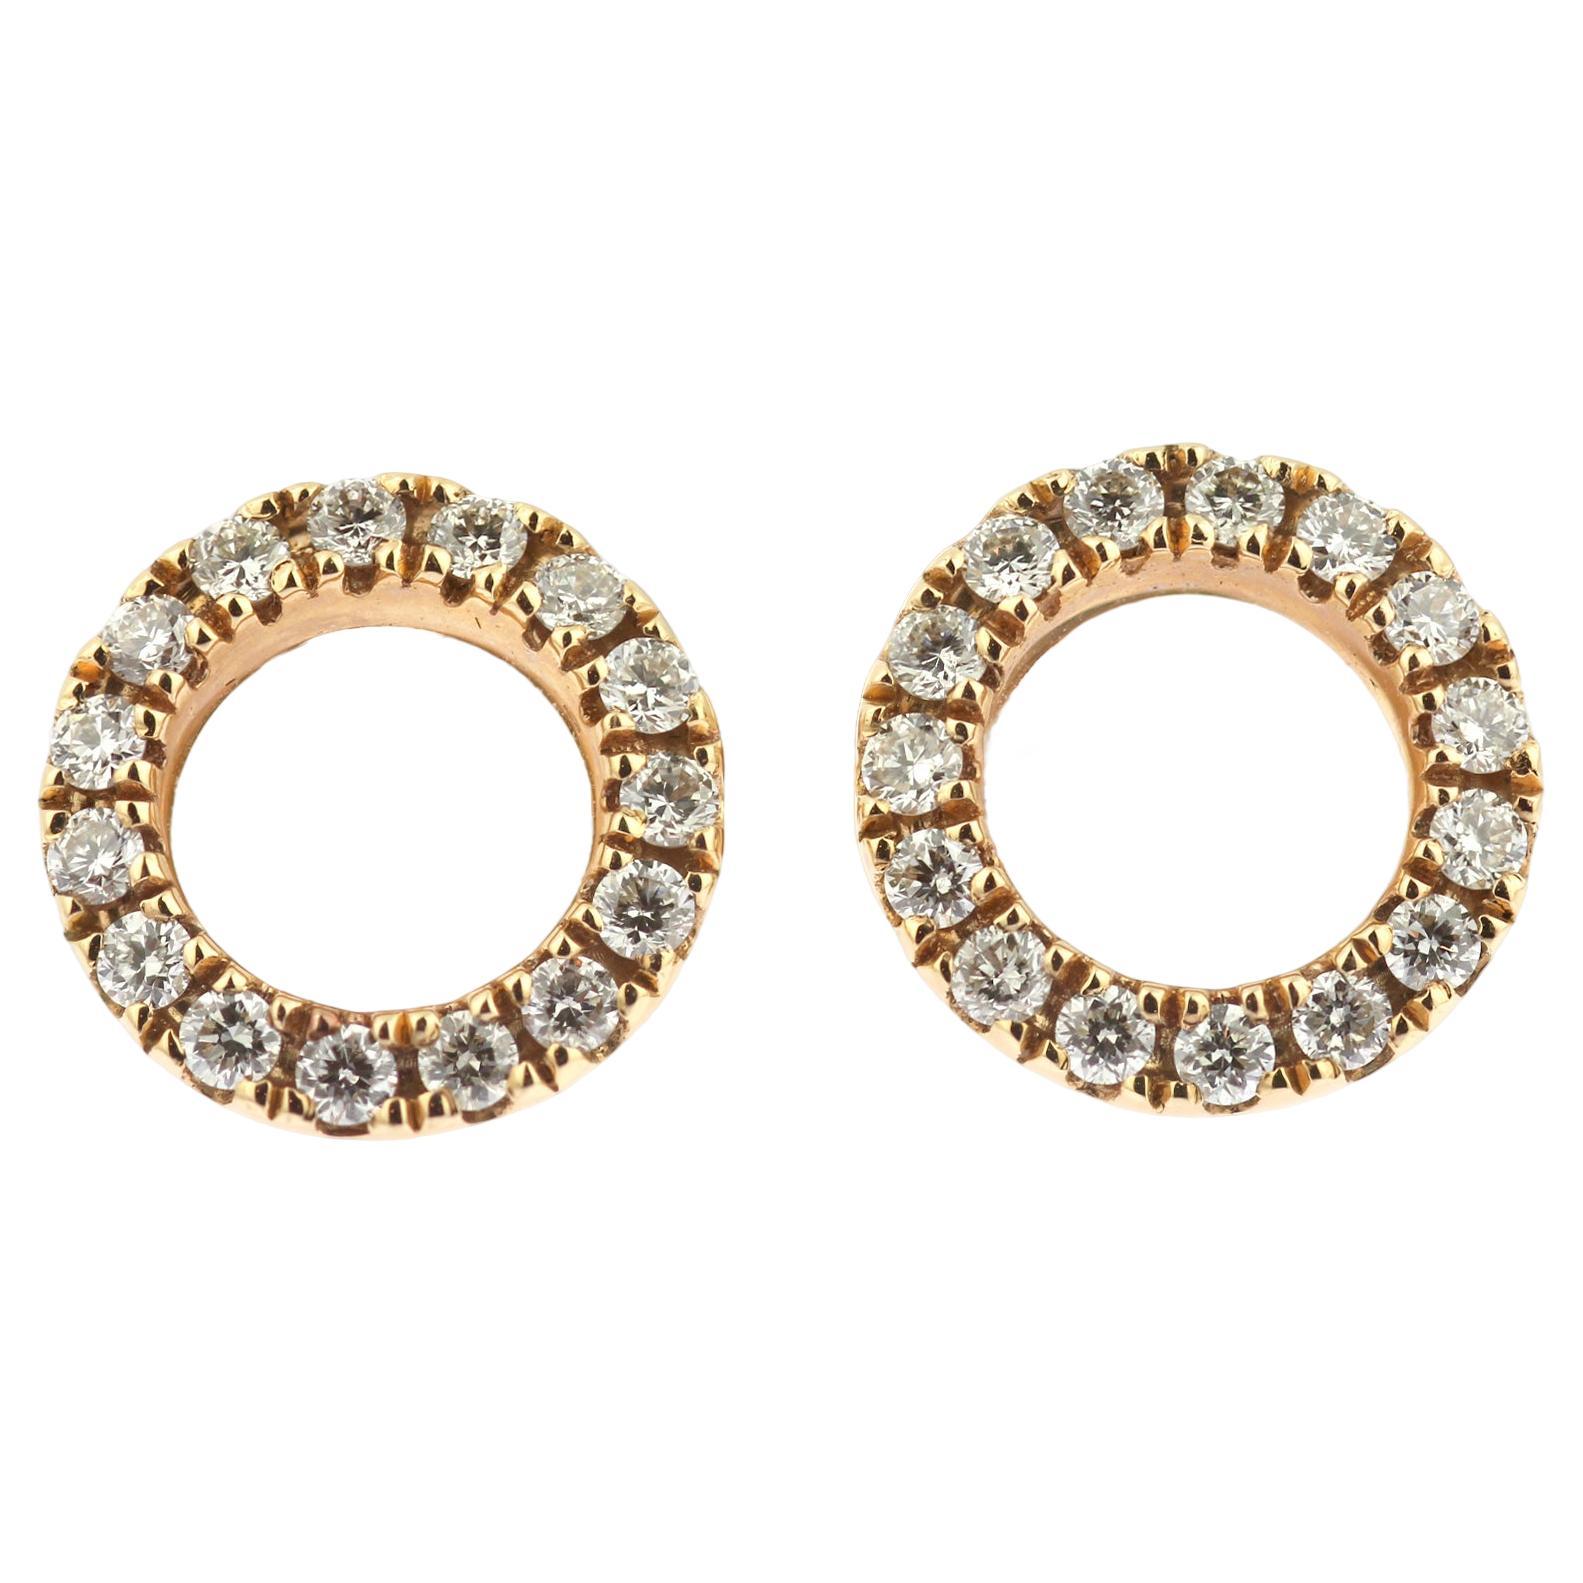 Zeitgenössische Ohrringe mit Kreis-Motiv aus 18 Karat Roségold und Diamanten